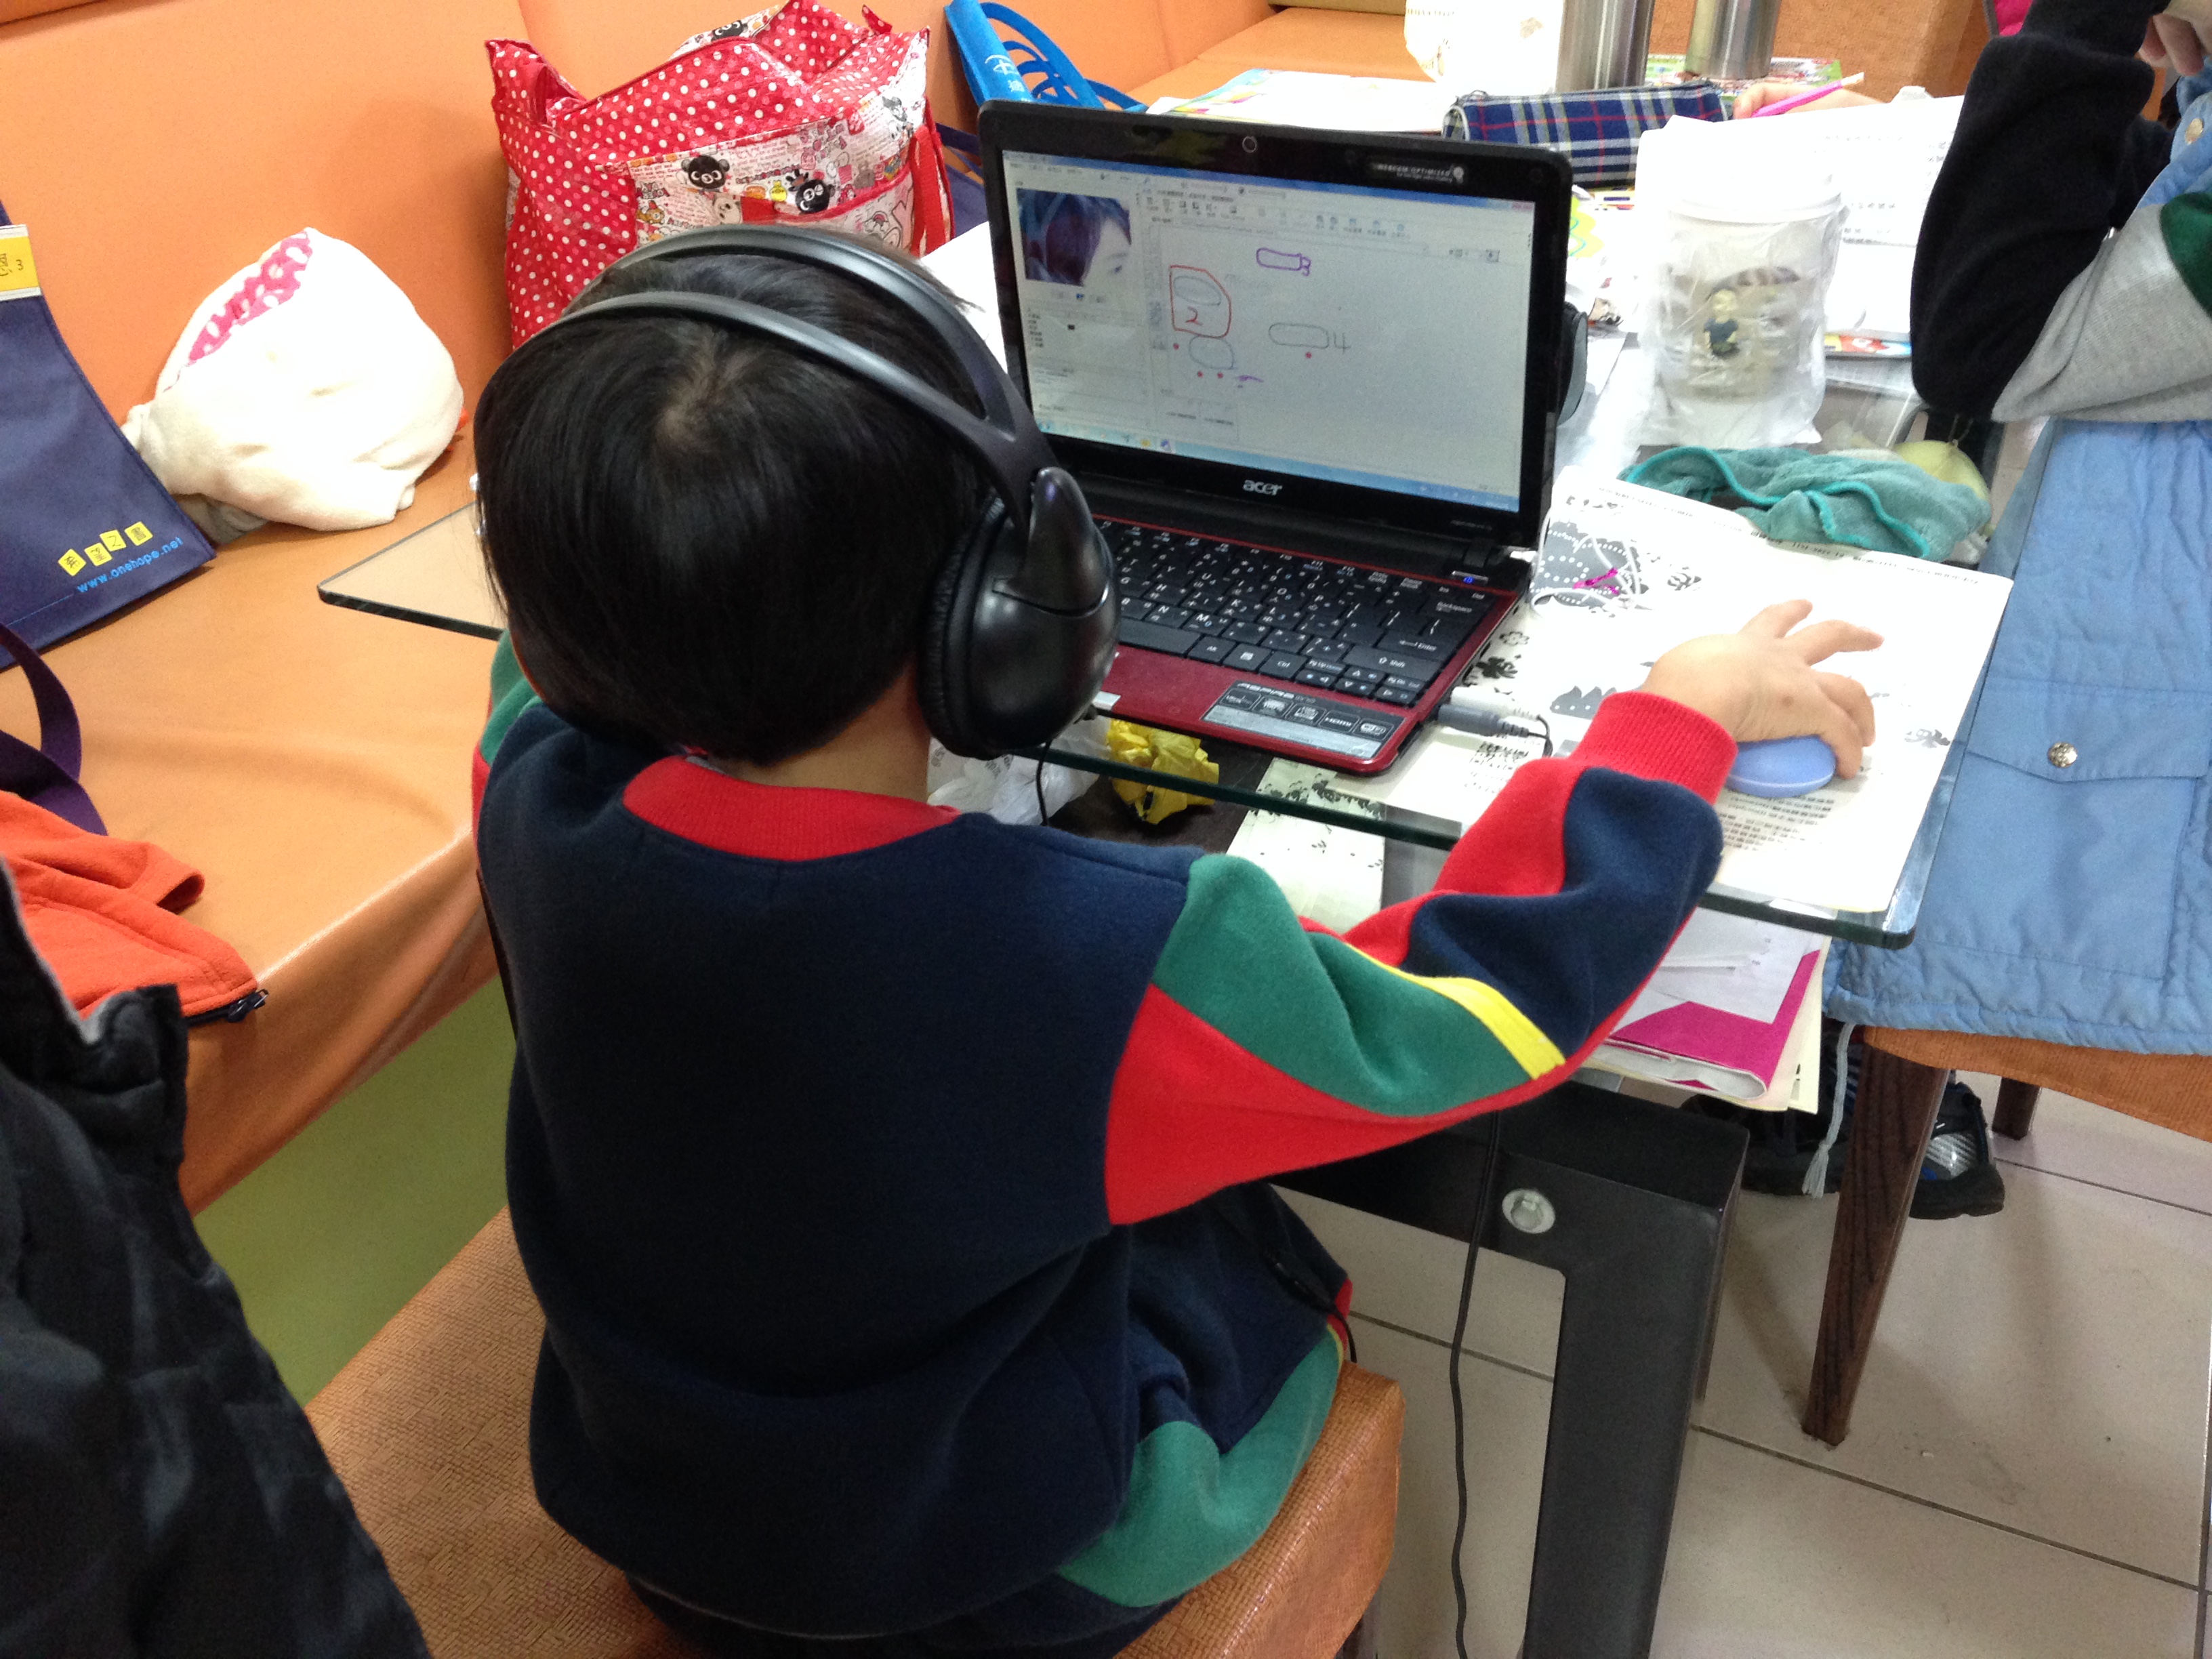 他是全班年紀最小的學生(小一)，連坐上椅子都需要老師協助抱上去。但是他是全般最專注的學生，從頭到尾視線沒有離開過電腦，每次回答的聲音一定非常響亮。